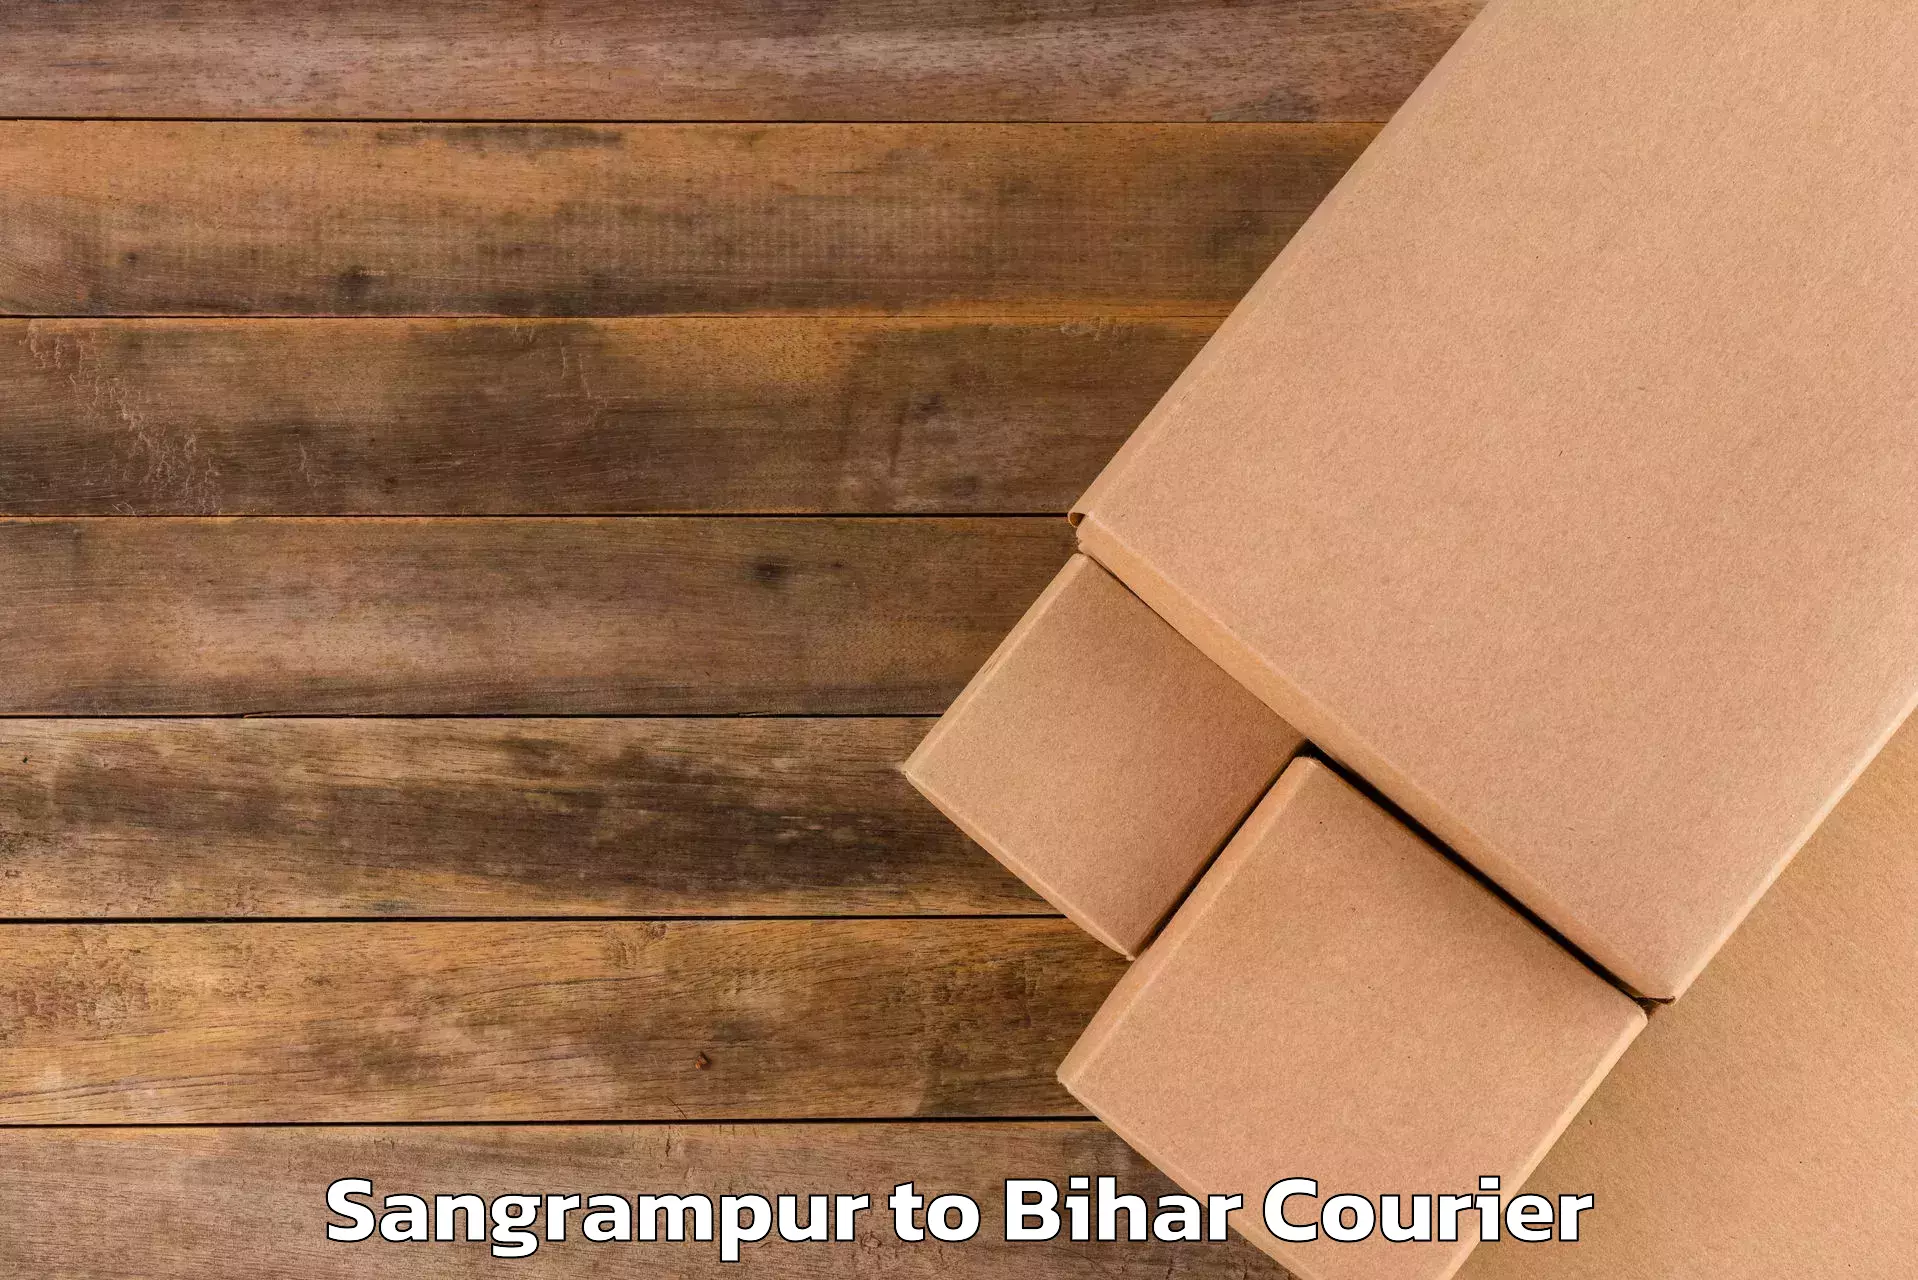 Luggage transport consultancy Sangrampur to Narpatganj